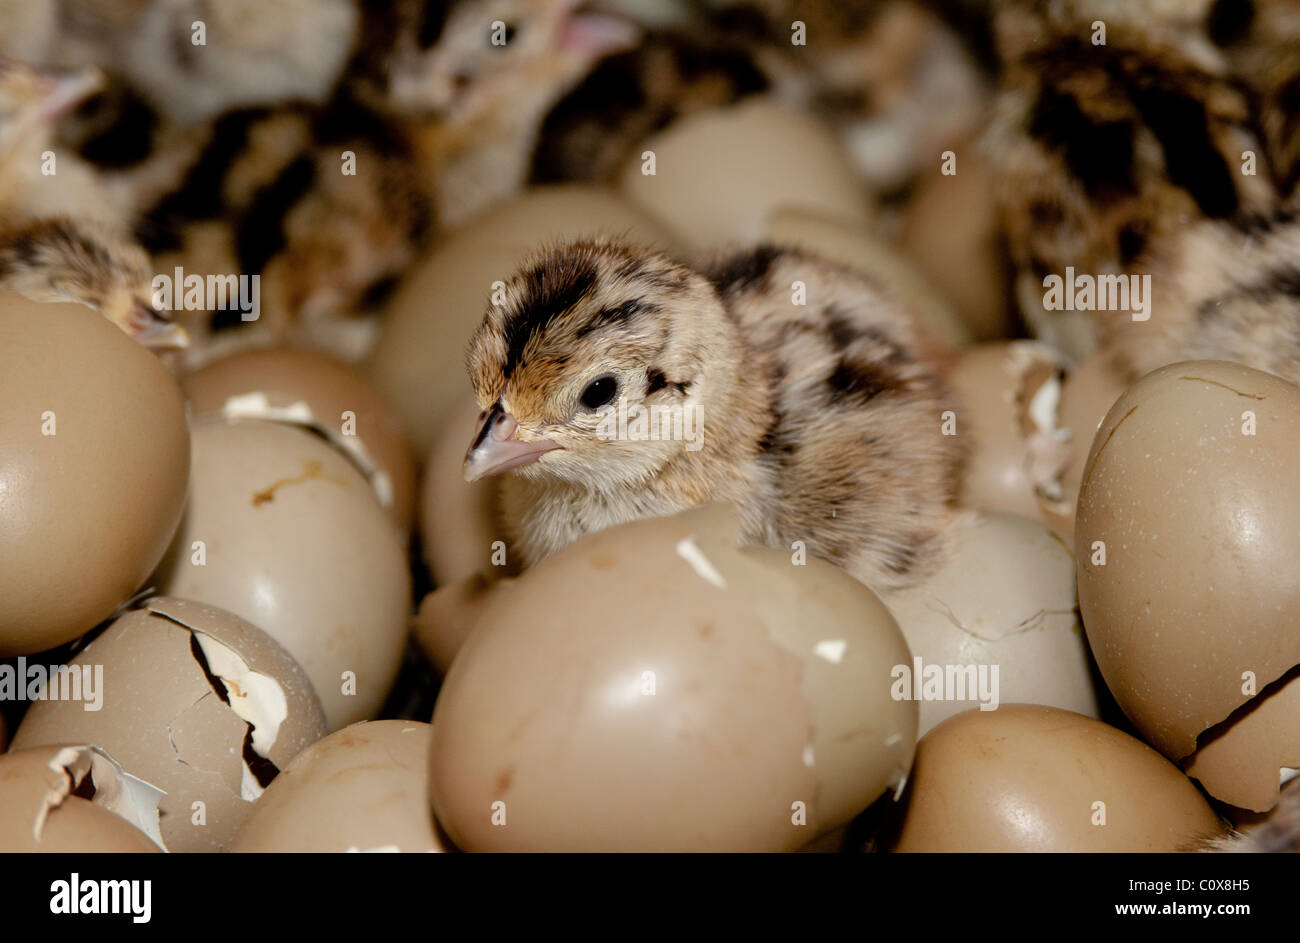 Jour poussin faisan incubation juste hors de l'oeuf Photo Stock - Alamy